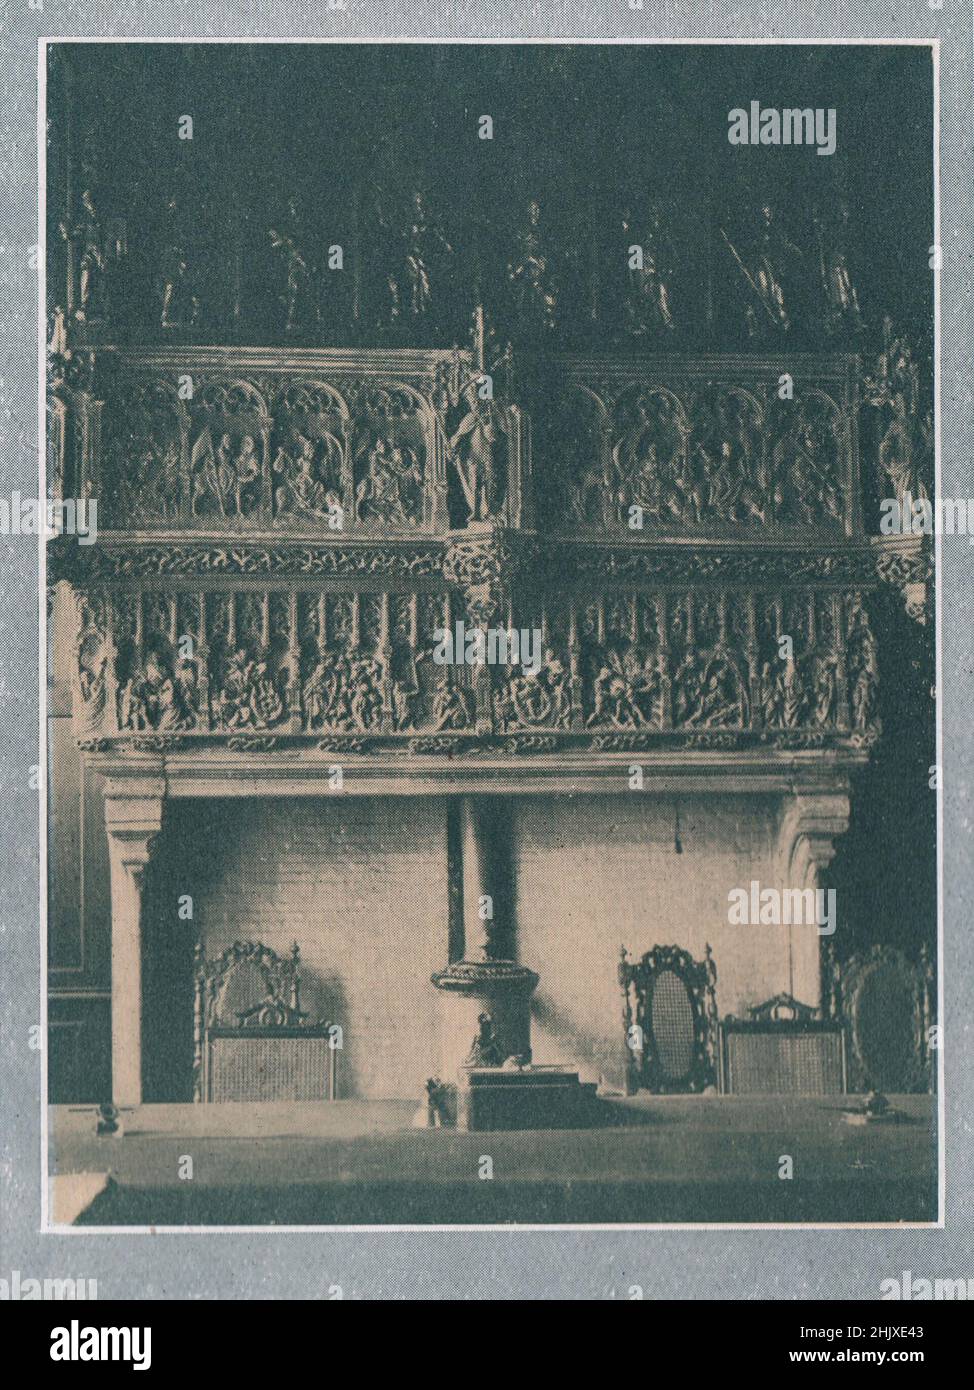 Cheminée à l'Hôtel de ville, Courtrai. Belgique (1925) Banque D'Images